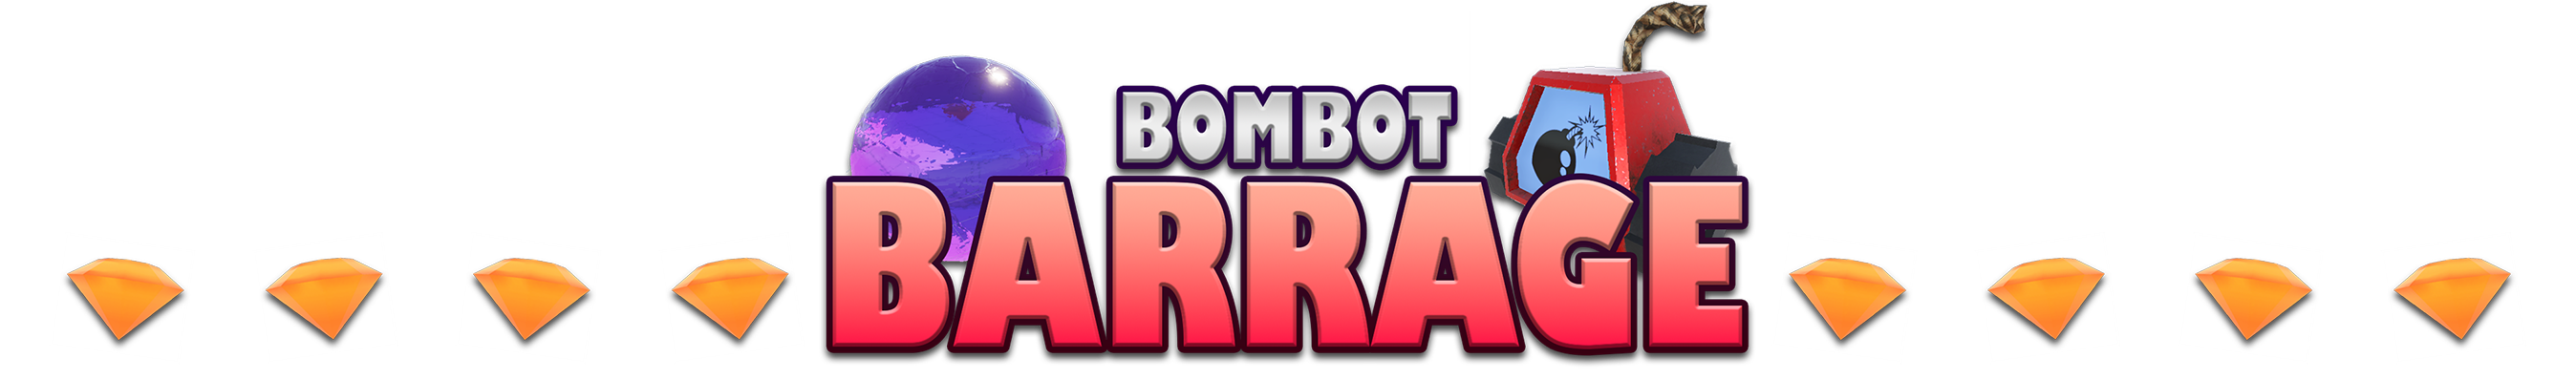 Bombot Barrage